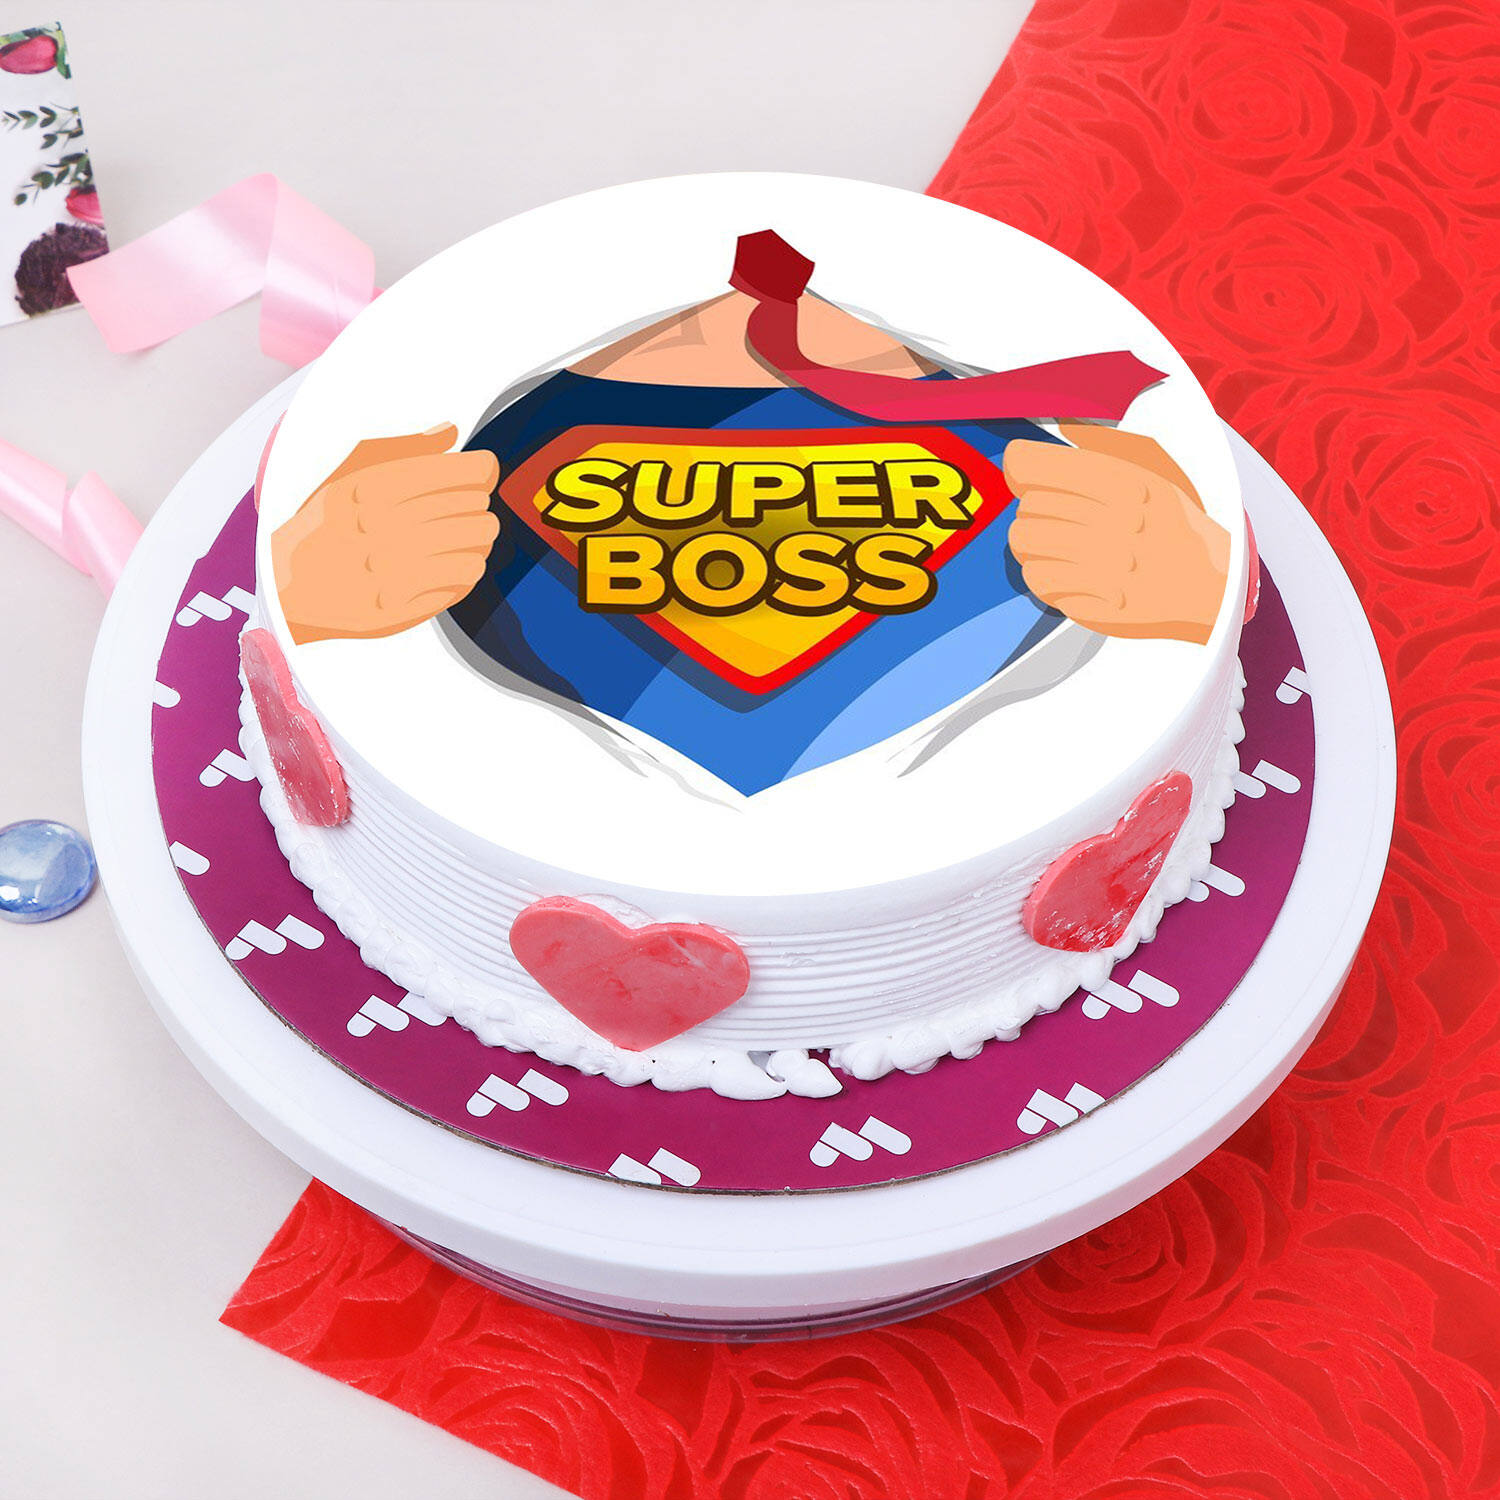 Superhero Cream Cake For Super Dad 2 kg : Gift/Send QFilter Gifts Online  JVS1178787 |IGP.com